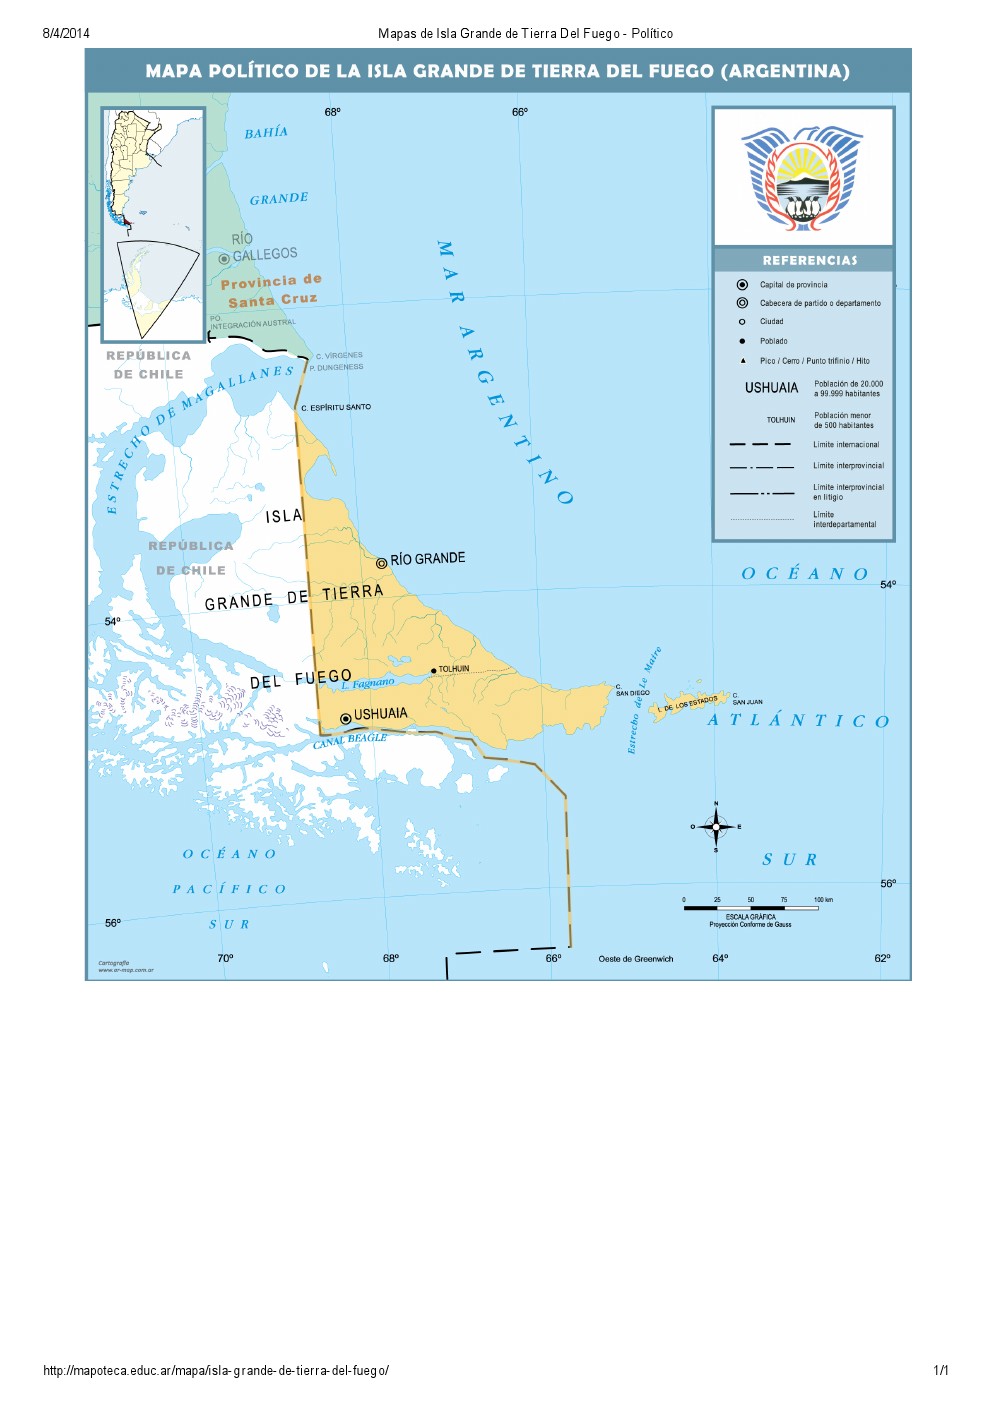 Mapa de capitales de Isla Grande de Tierra del Fuego. Mapoteca de Educ.ar